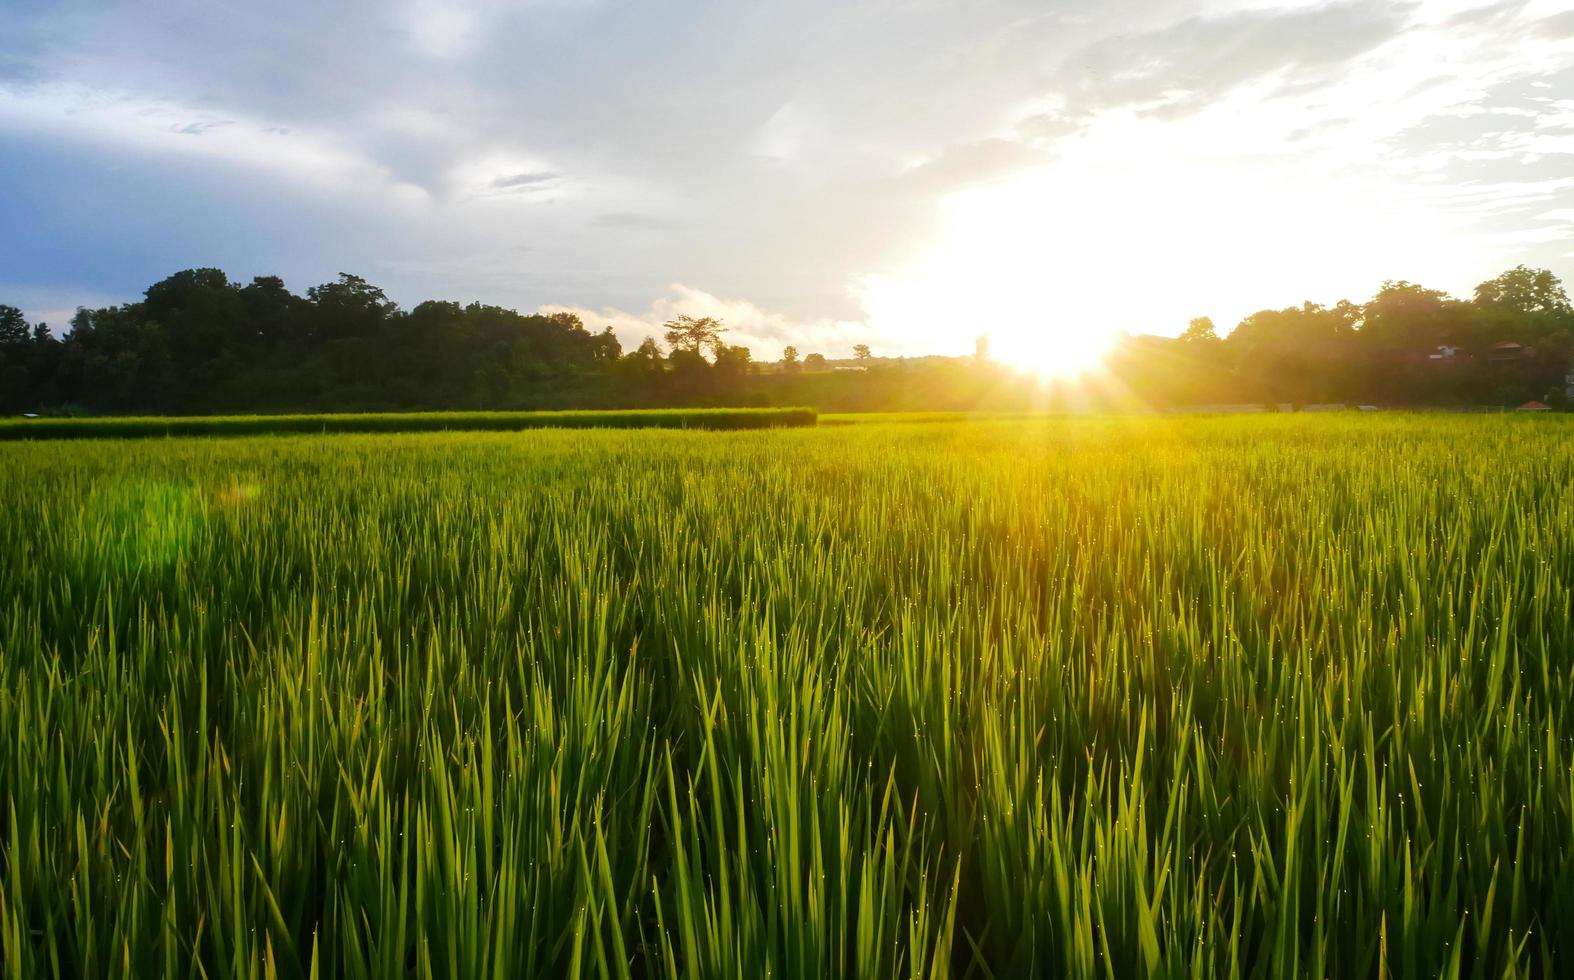 rizière verte saison des pluies et coucher de soleil beaux paysages naturels photo